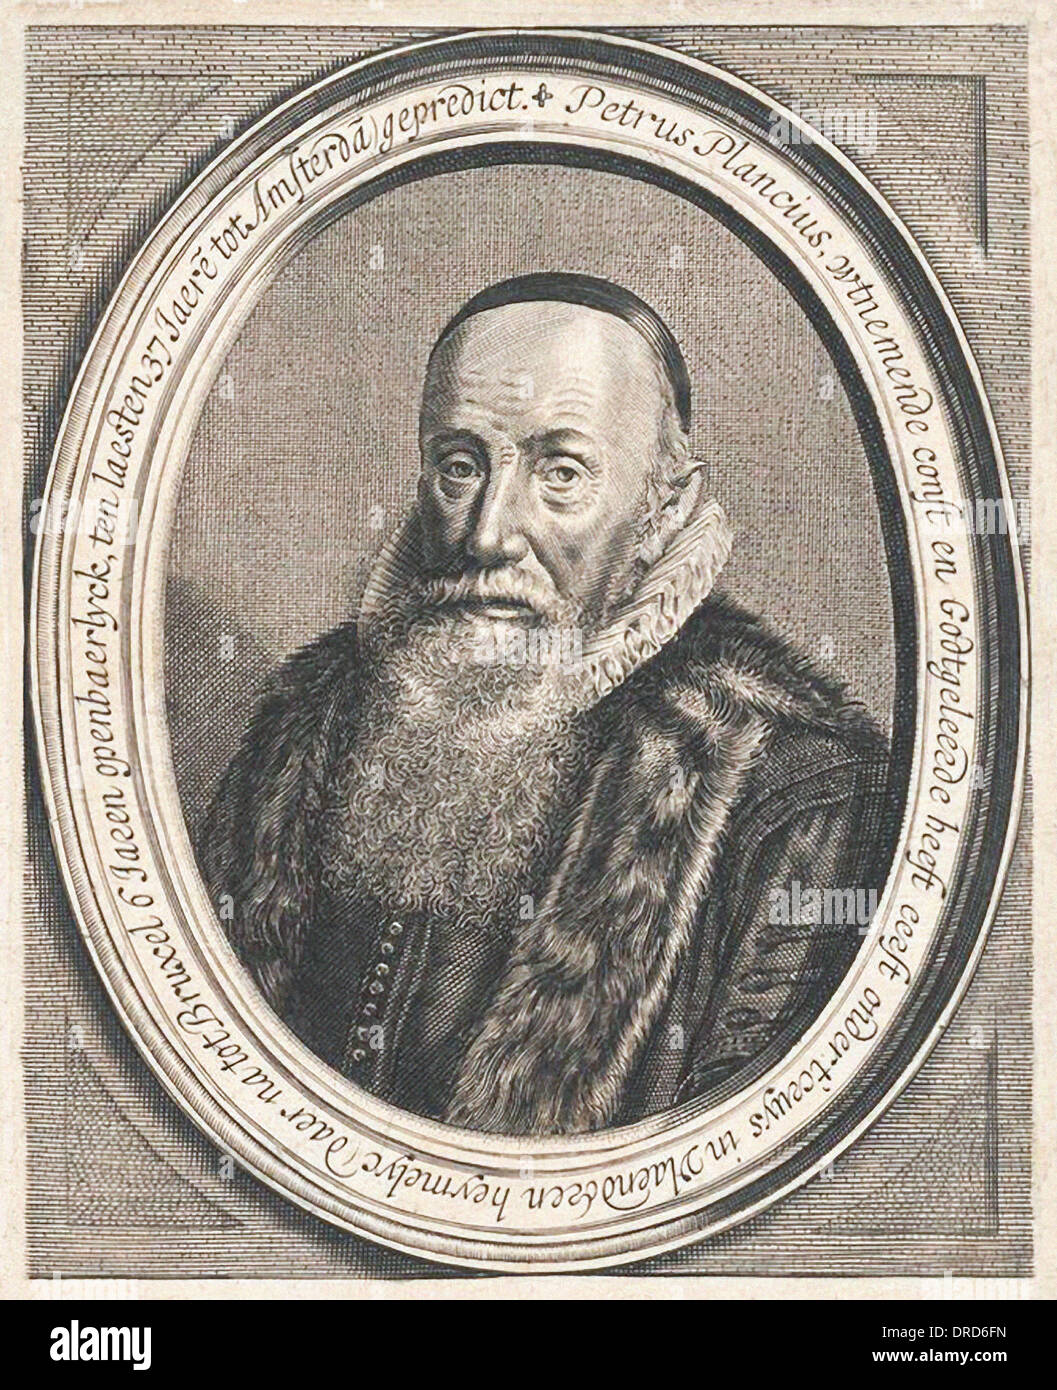 Petrus Plancius (1552-1622), niederländischer Astronom, Mathematiker und Kartograph. Gründer und Kartograph für die Niederländische Ostindien-Kompanie. Stockfoto